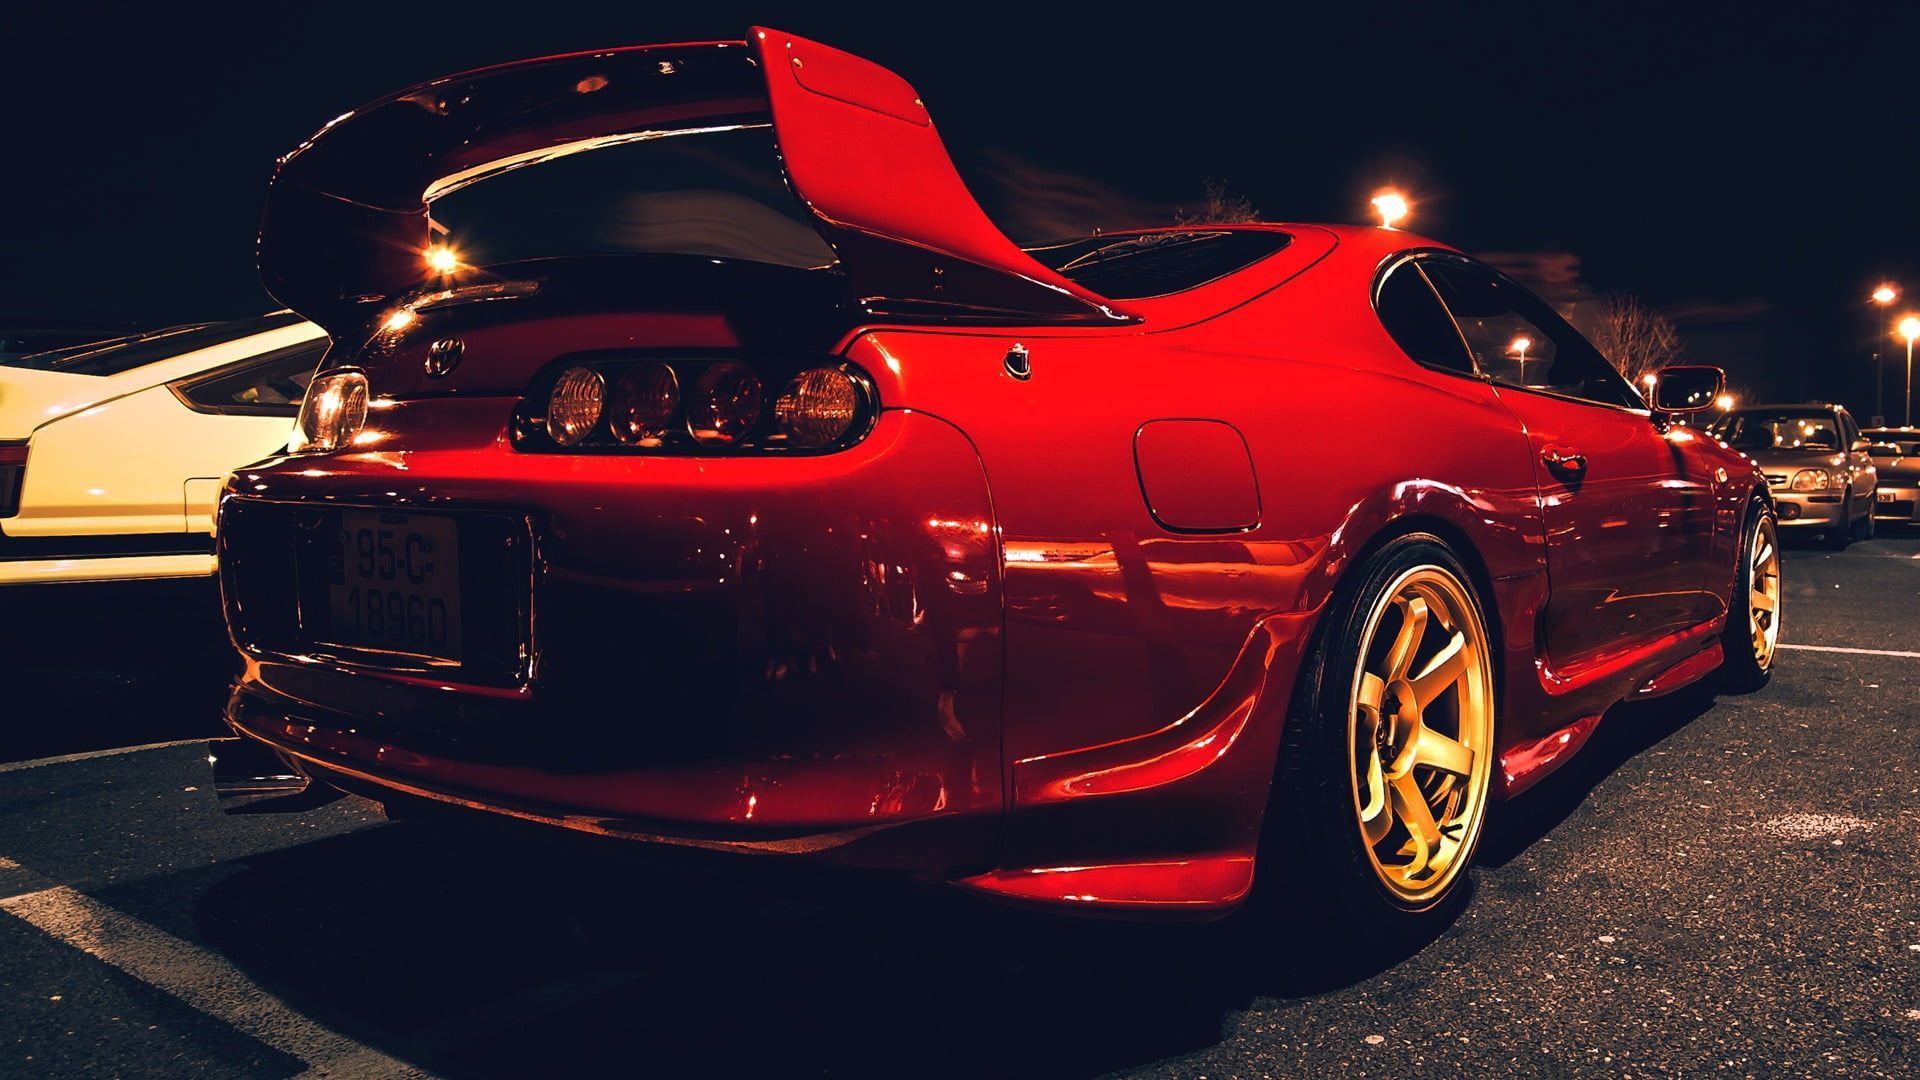 red Toyota Supra MK4 #Night #Red #Machine #Red #Toyota #Car #Parking #Drives #Night #Supra #Parking #Toyota #Supra #Kit. Toyota supra, Toyota supra mk Red car